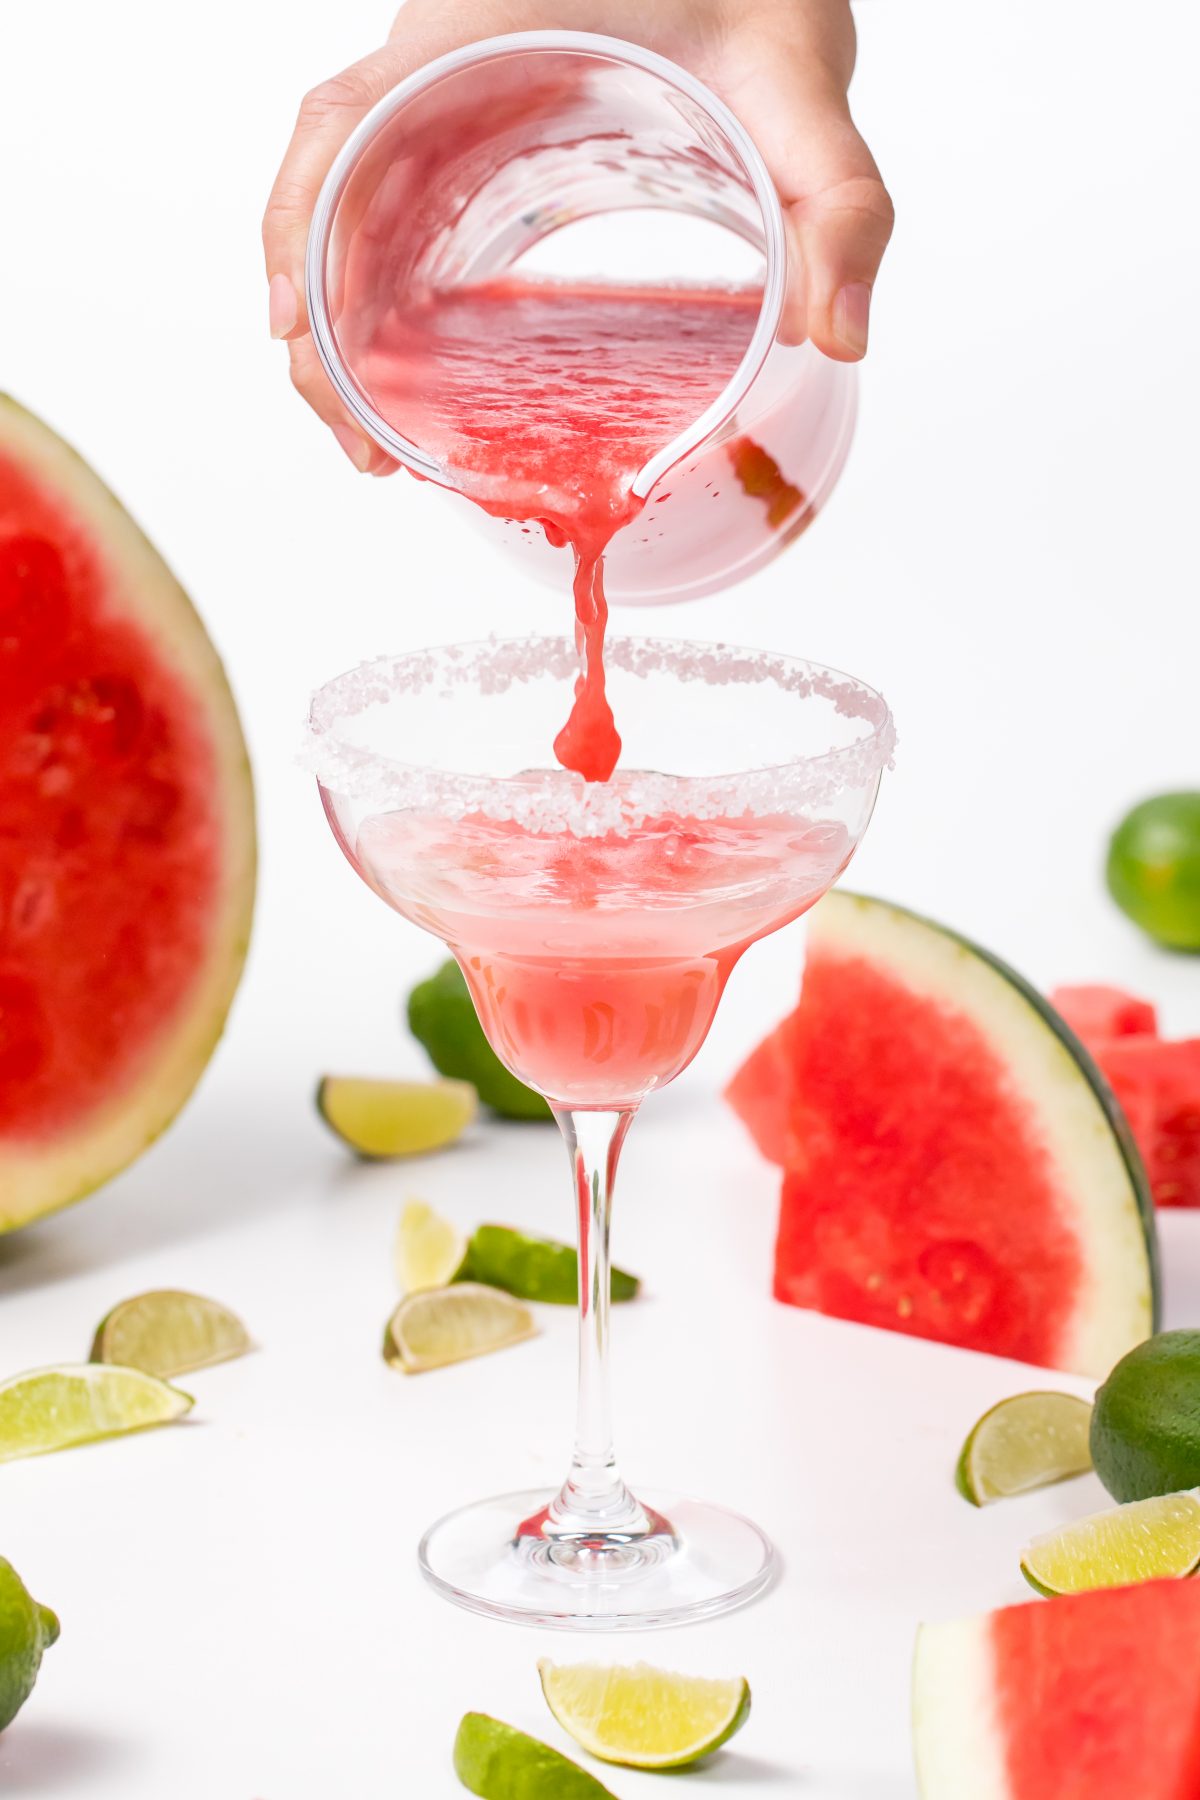 Pour watermelon juice into glas